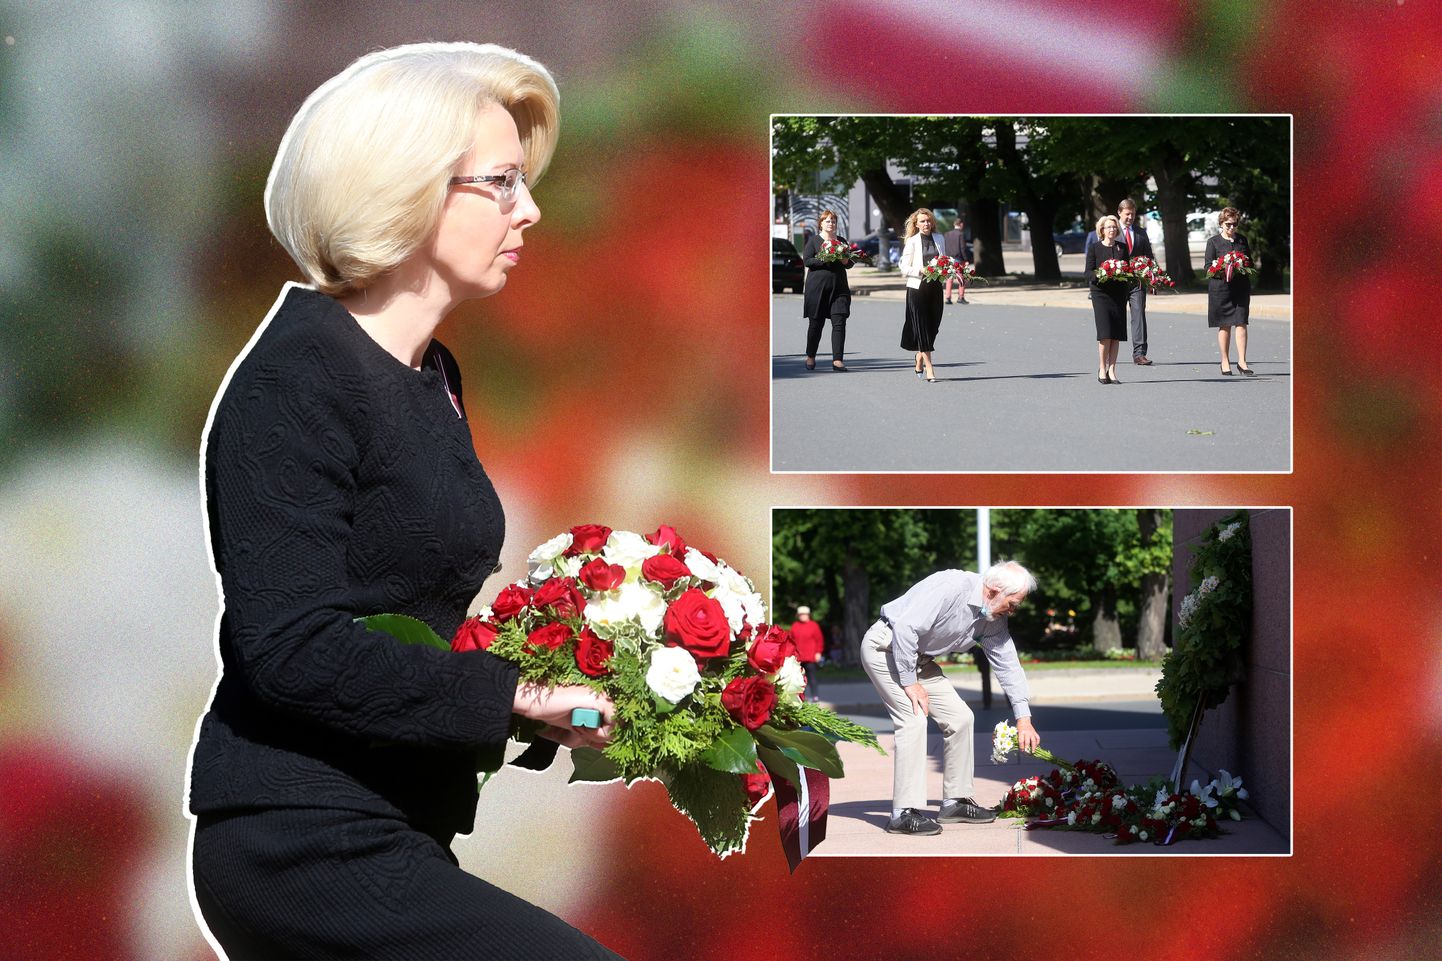 Pa kreisi - Saeimas priekšsēdētāja Ināra Mūrniece. Augšējā foto Saeimas Prezidija locekļi Komunistiskā genocīda upuru piemiņas dienā dodoties nolikt ziedus pie Brīvības pieminekļa.